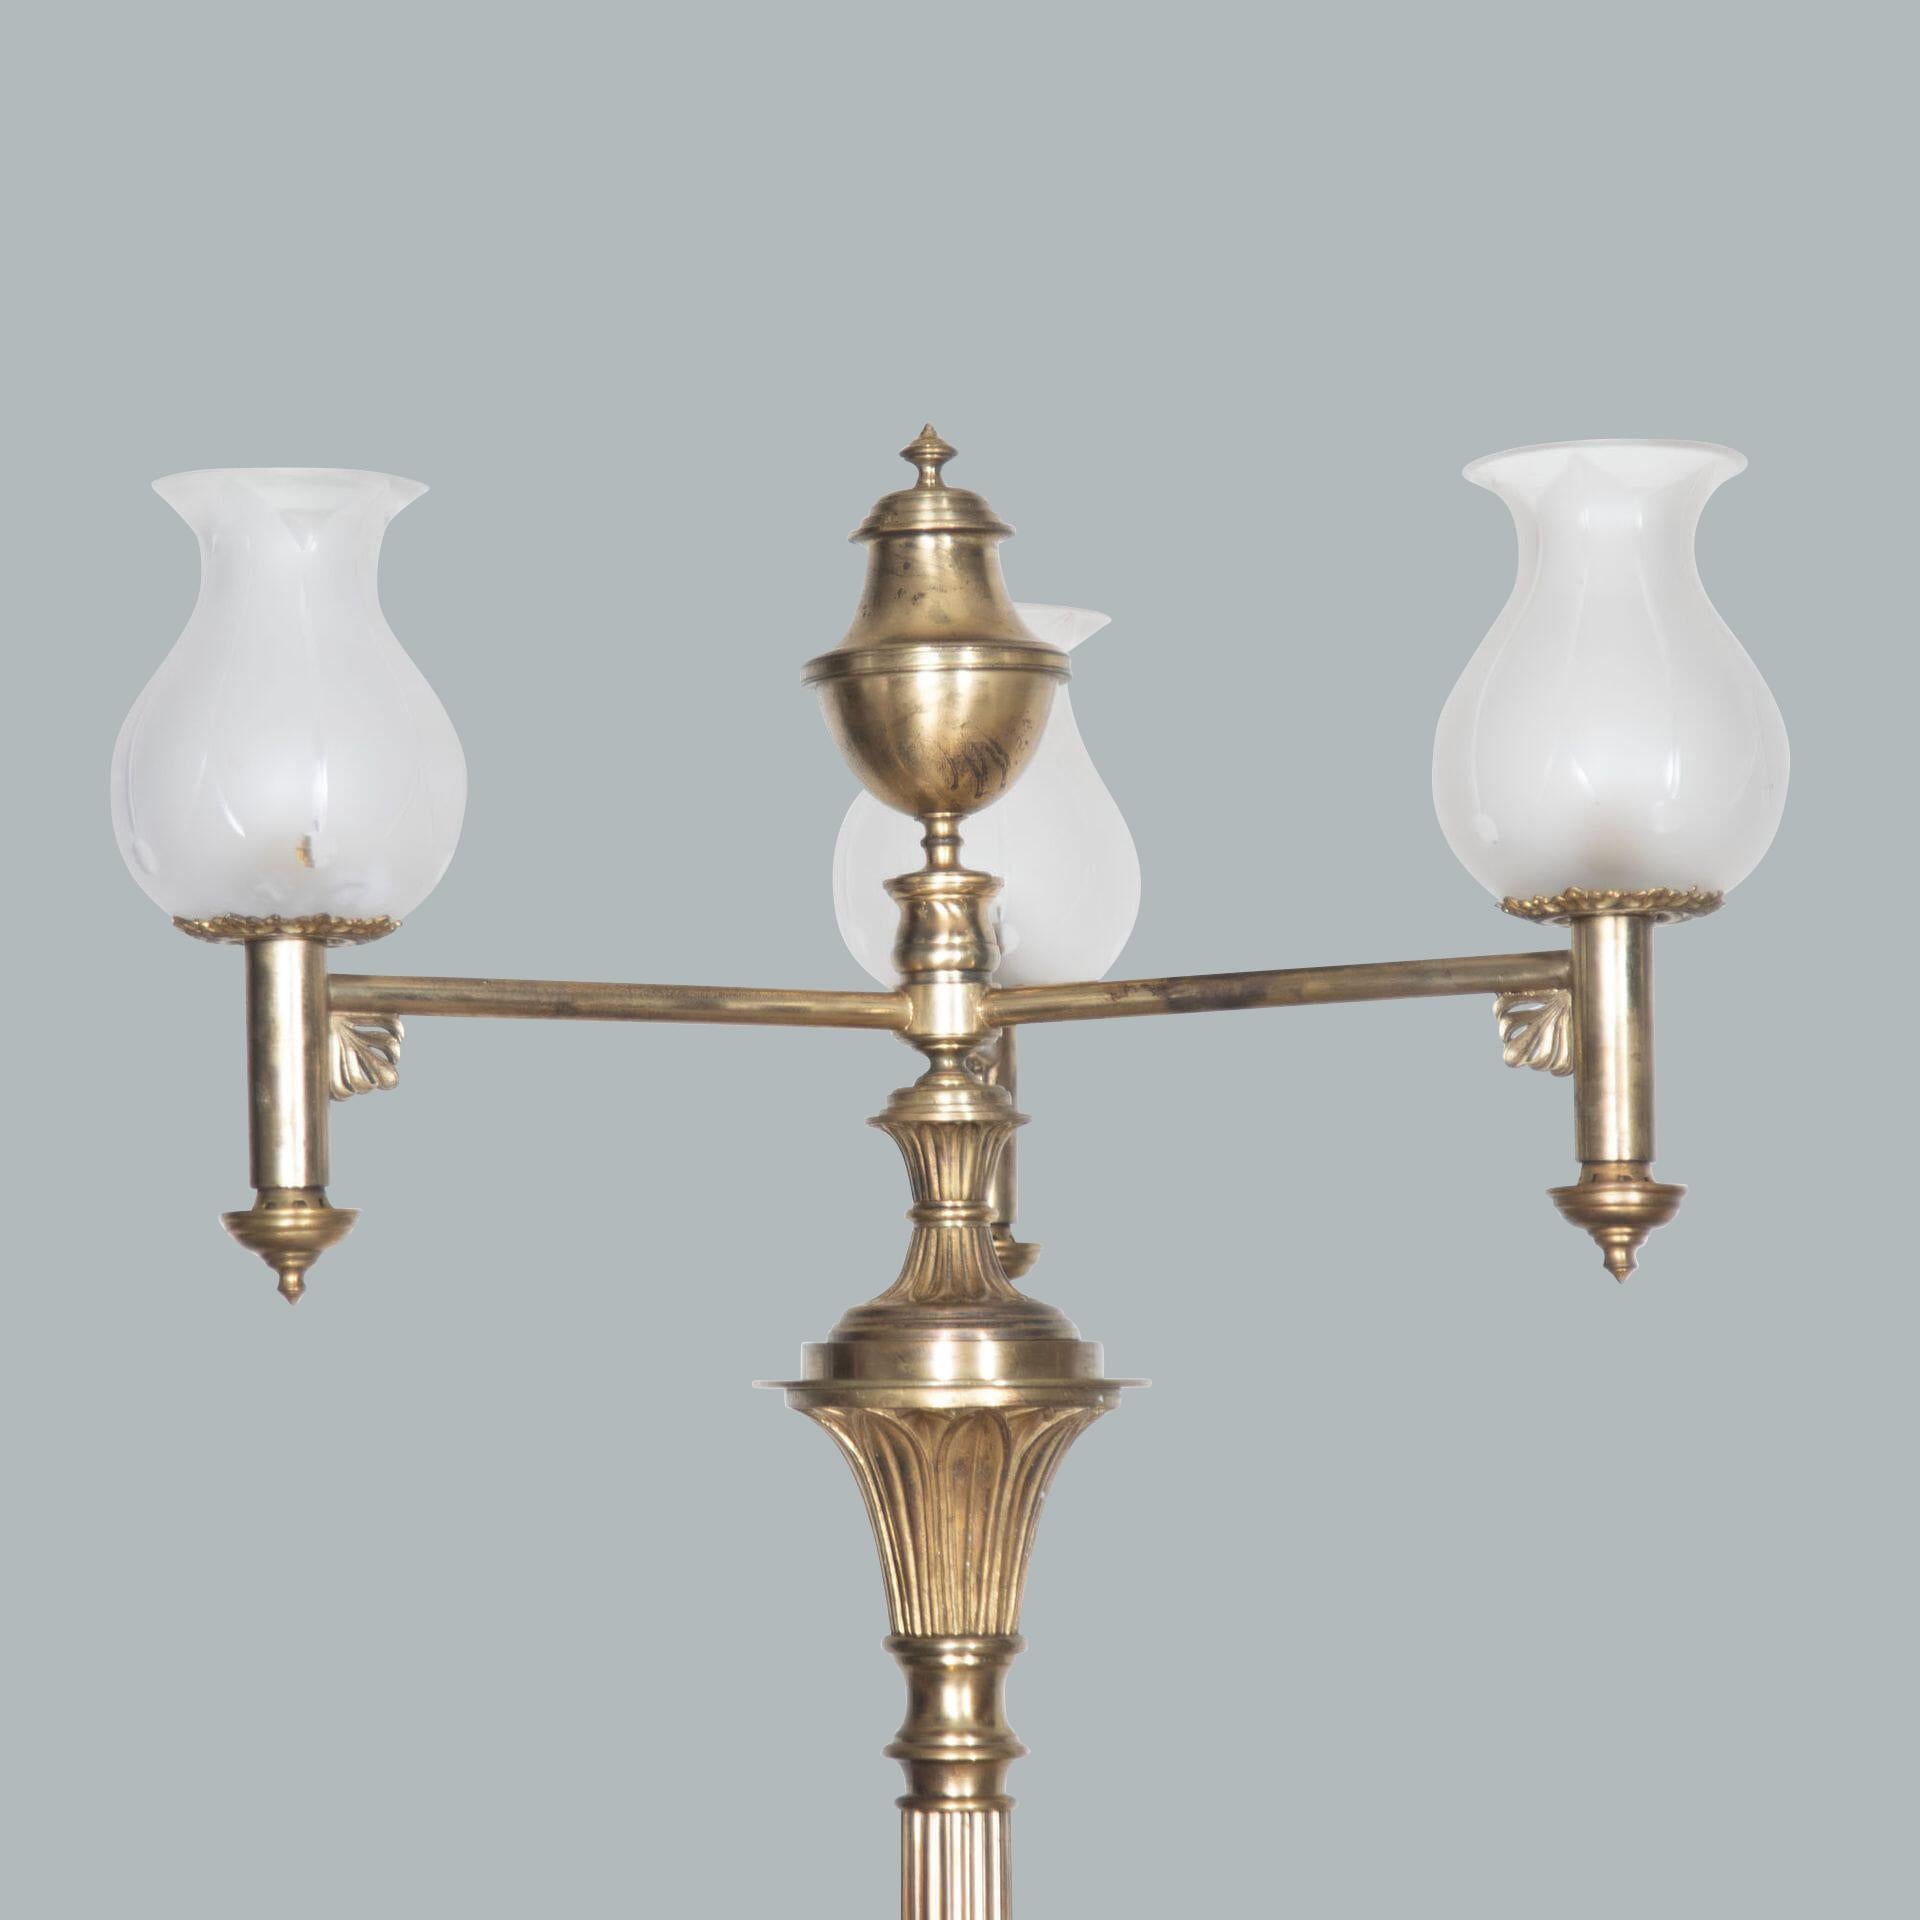 Une imposante paire de candélabres/lampe de table néo-classique en bronze doré à 3 lumières, chaque Branch avec des abat-jour en verre partiellement dépoli en forme de tulipe, menant à des colonnes cannelées coiffées de fleurons moulés et de